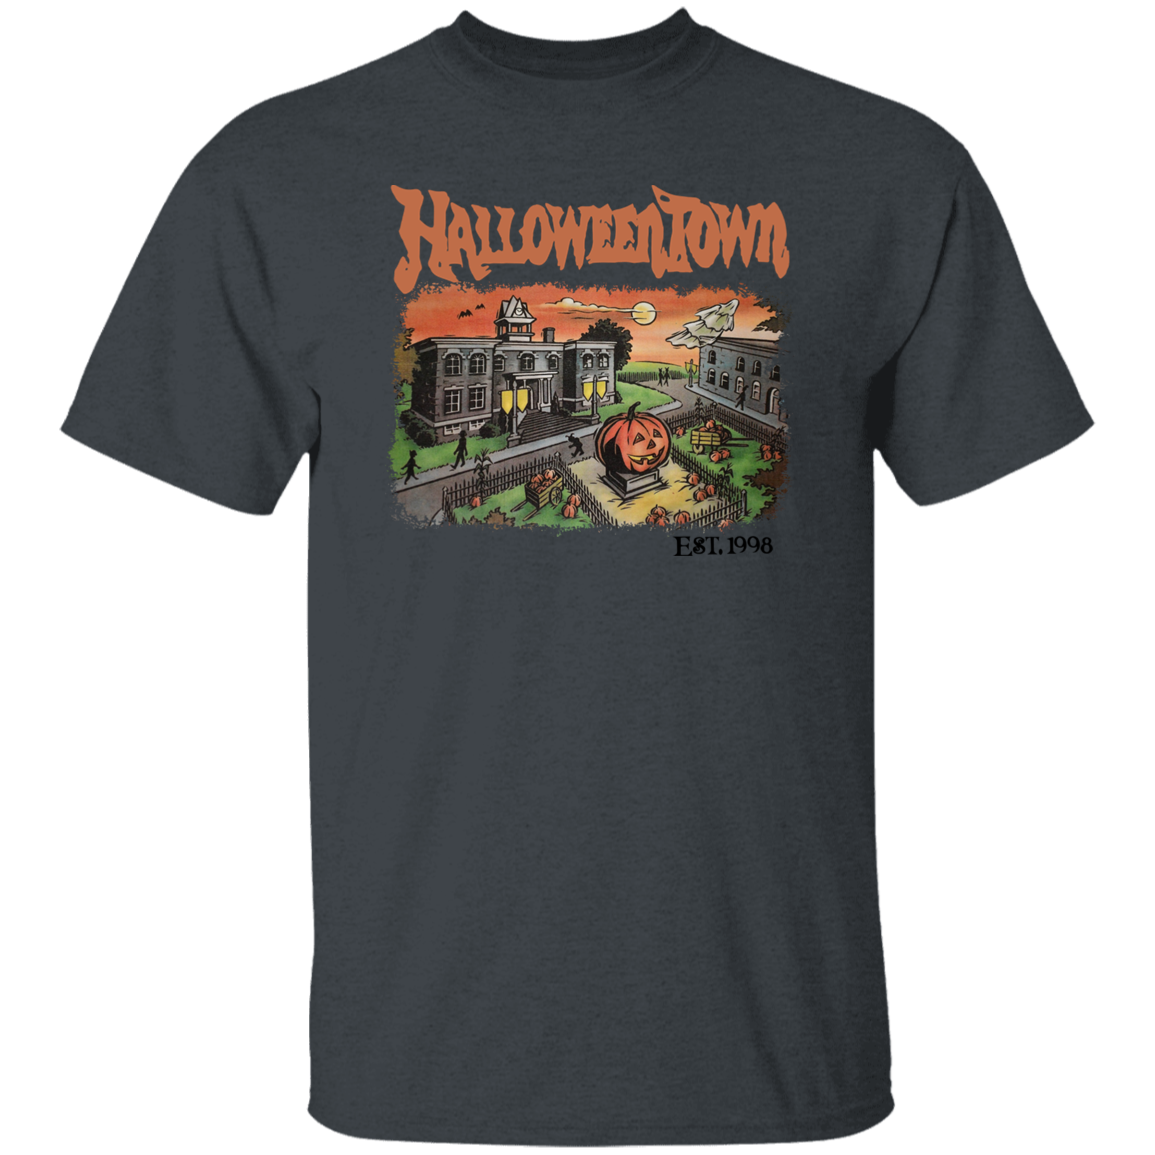 HalloweenTown- Men's T-Shirt